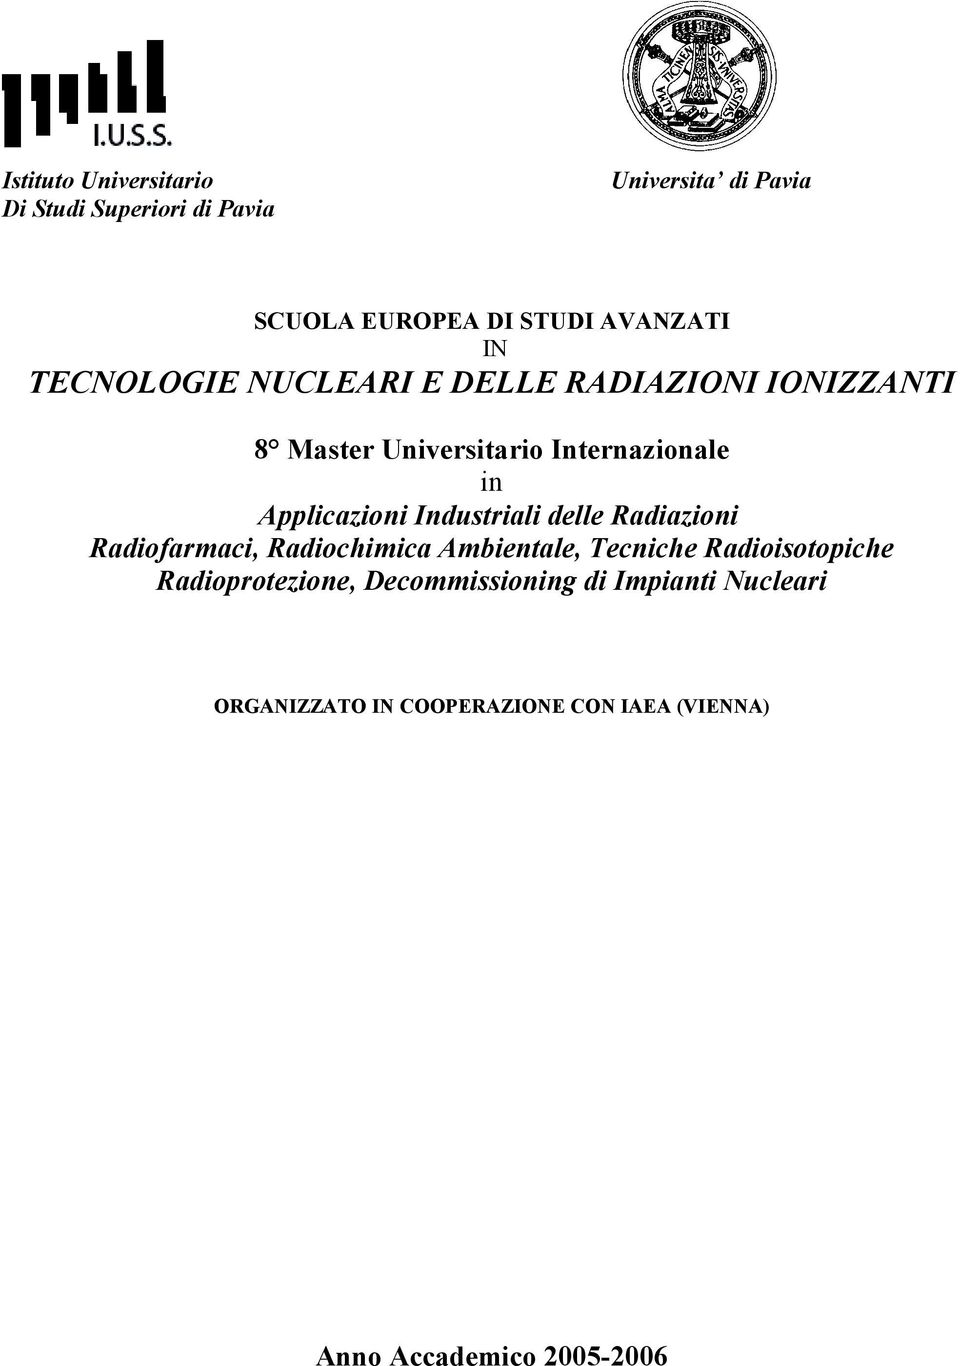 Industriali delle Radiazioni Radiofarmaci, Radiochimica Ambientale, Tecniche Radioisotopiche